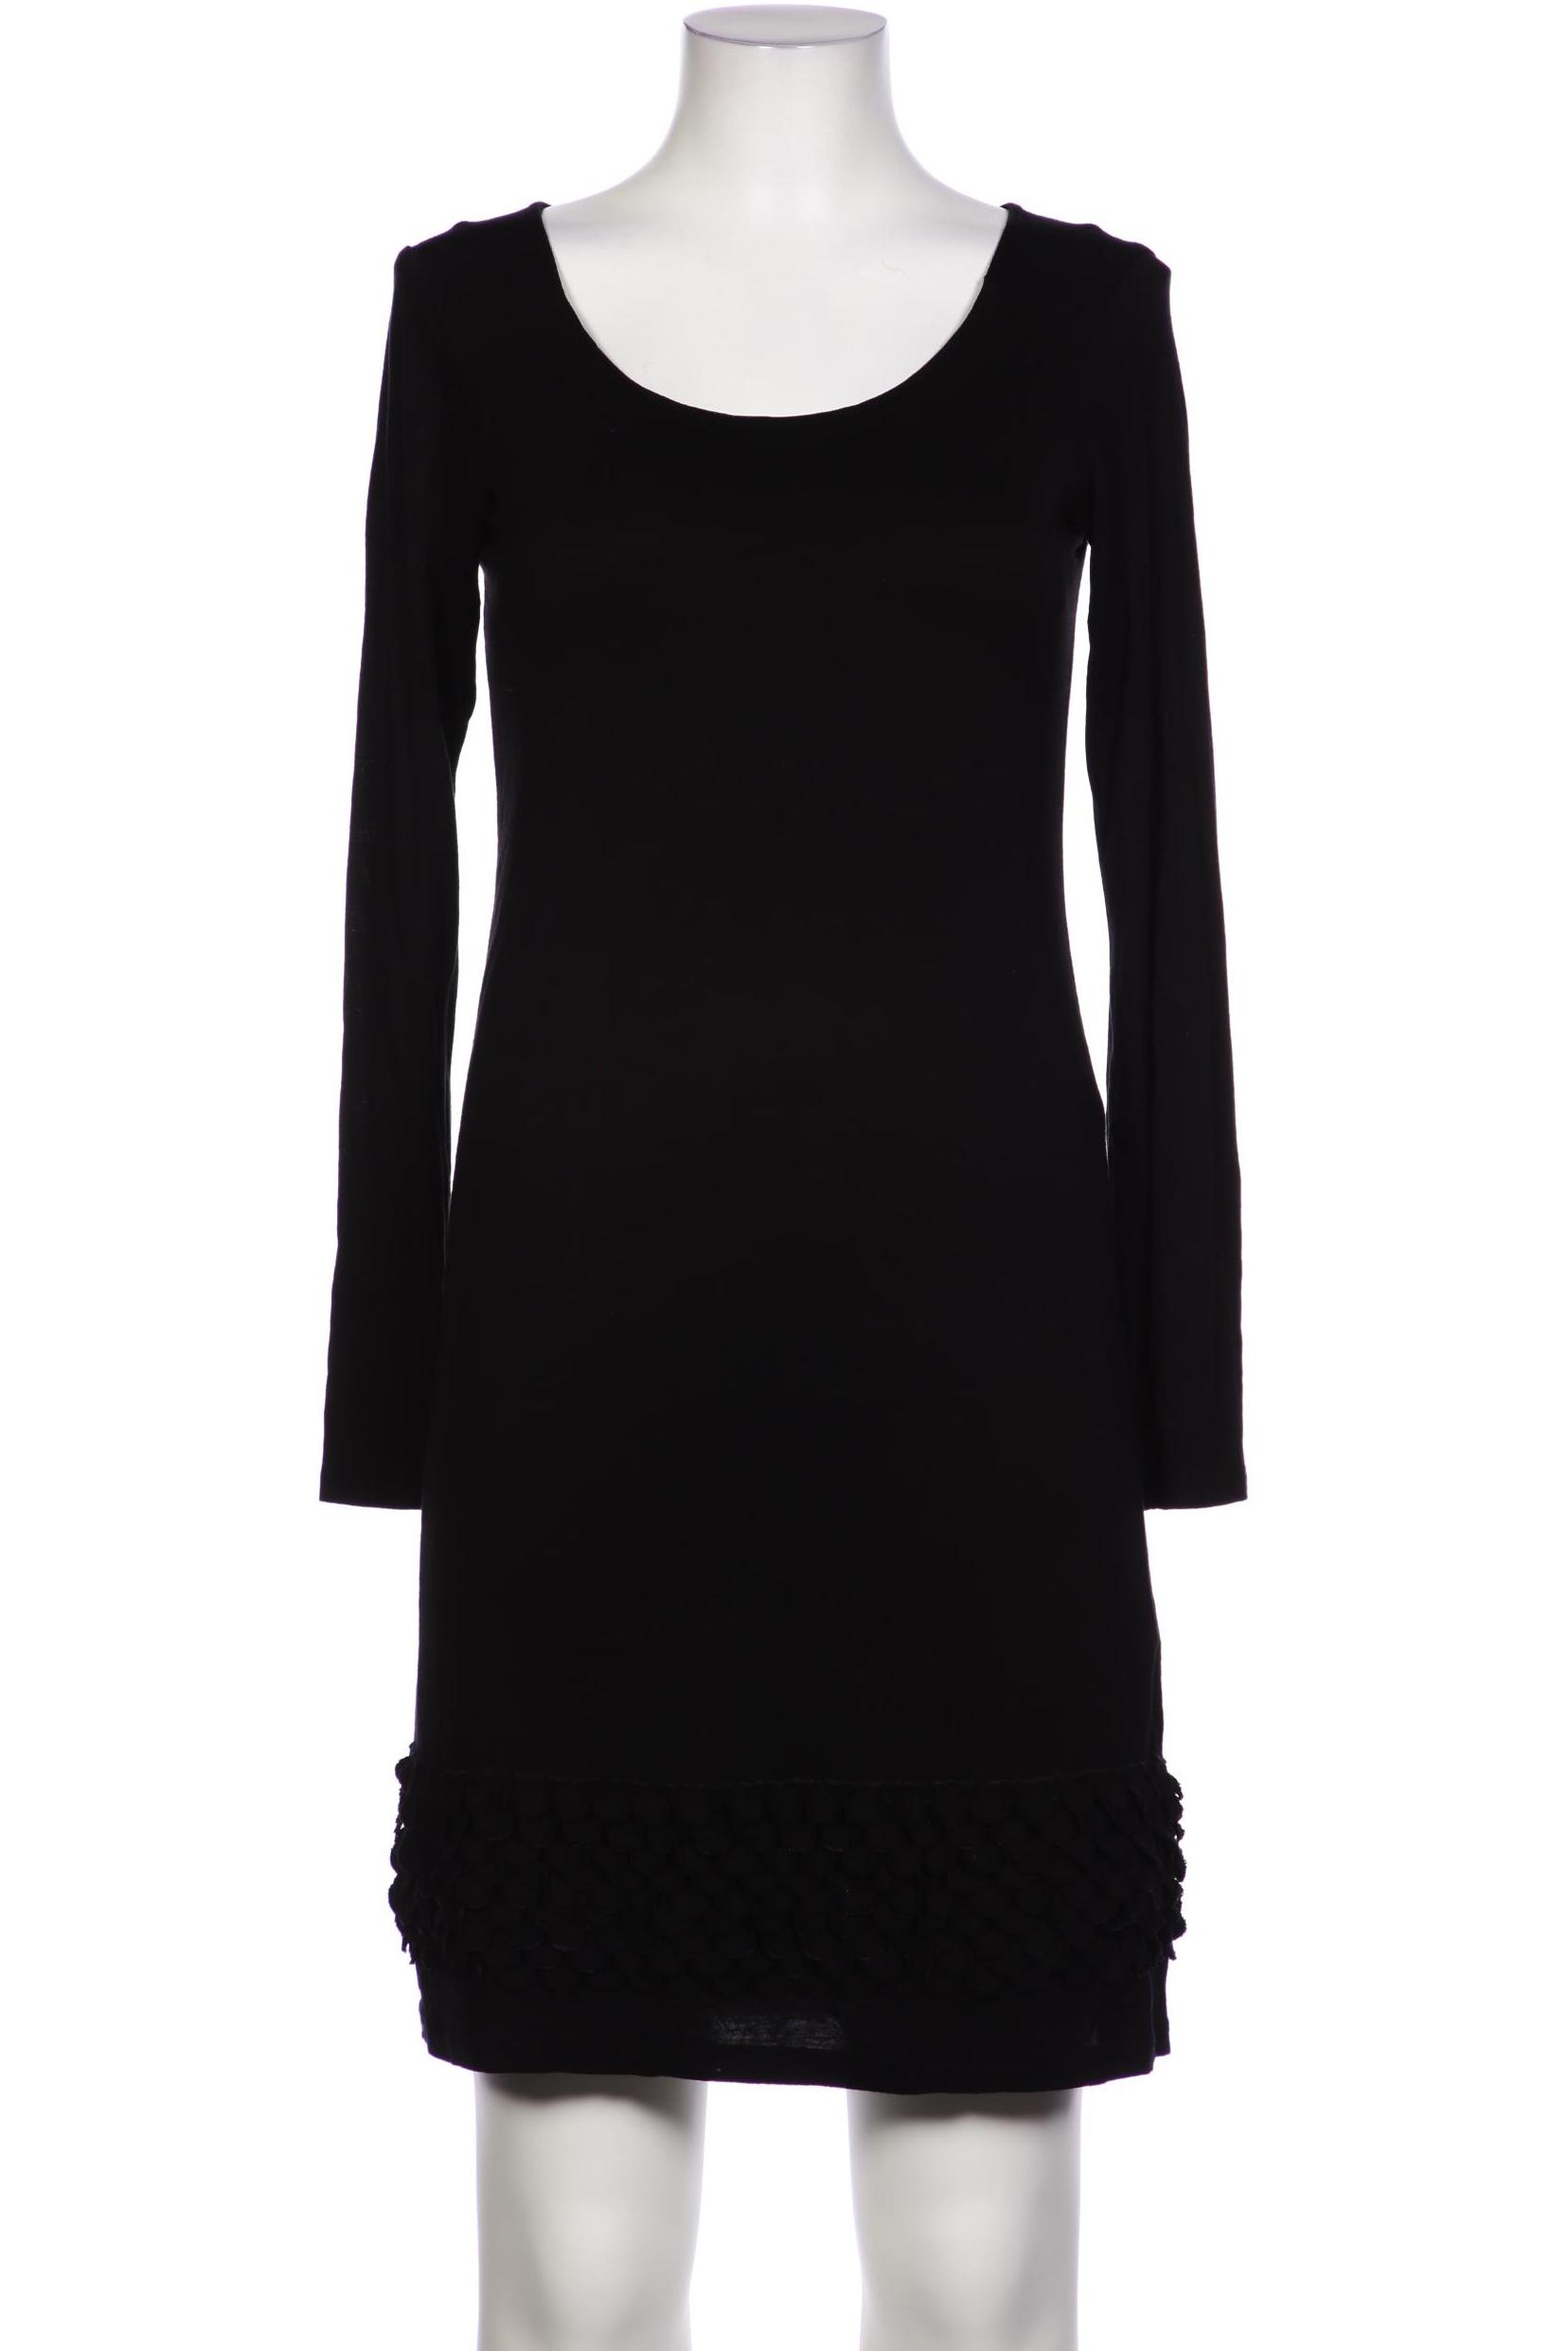 TURNOVER Damen Kleid, schwarz von TURNOVER